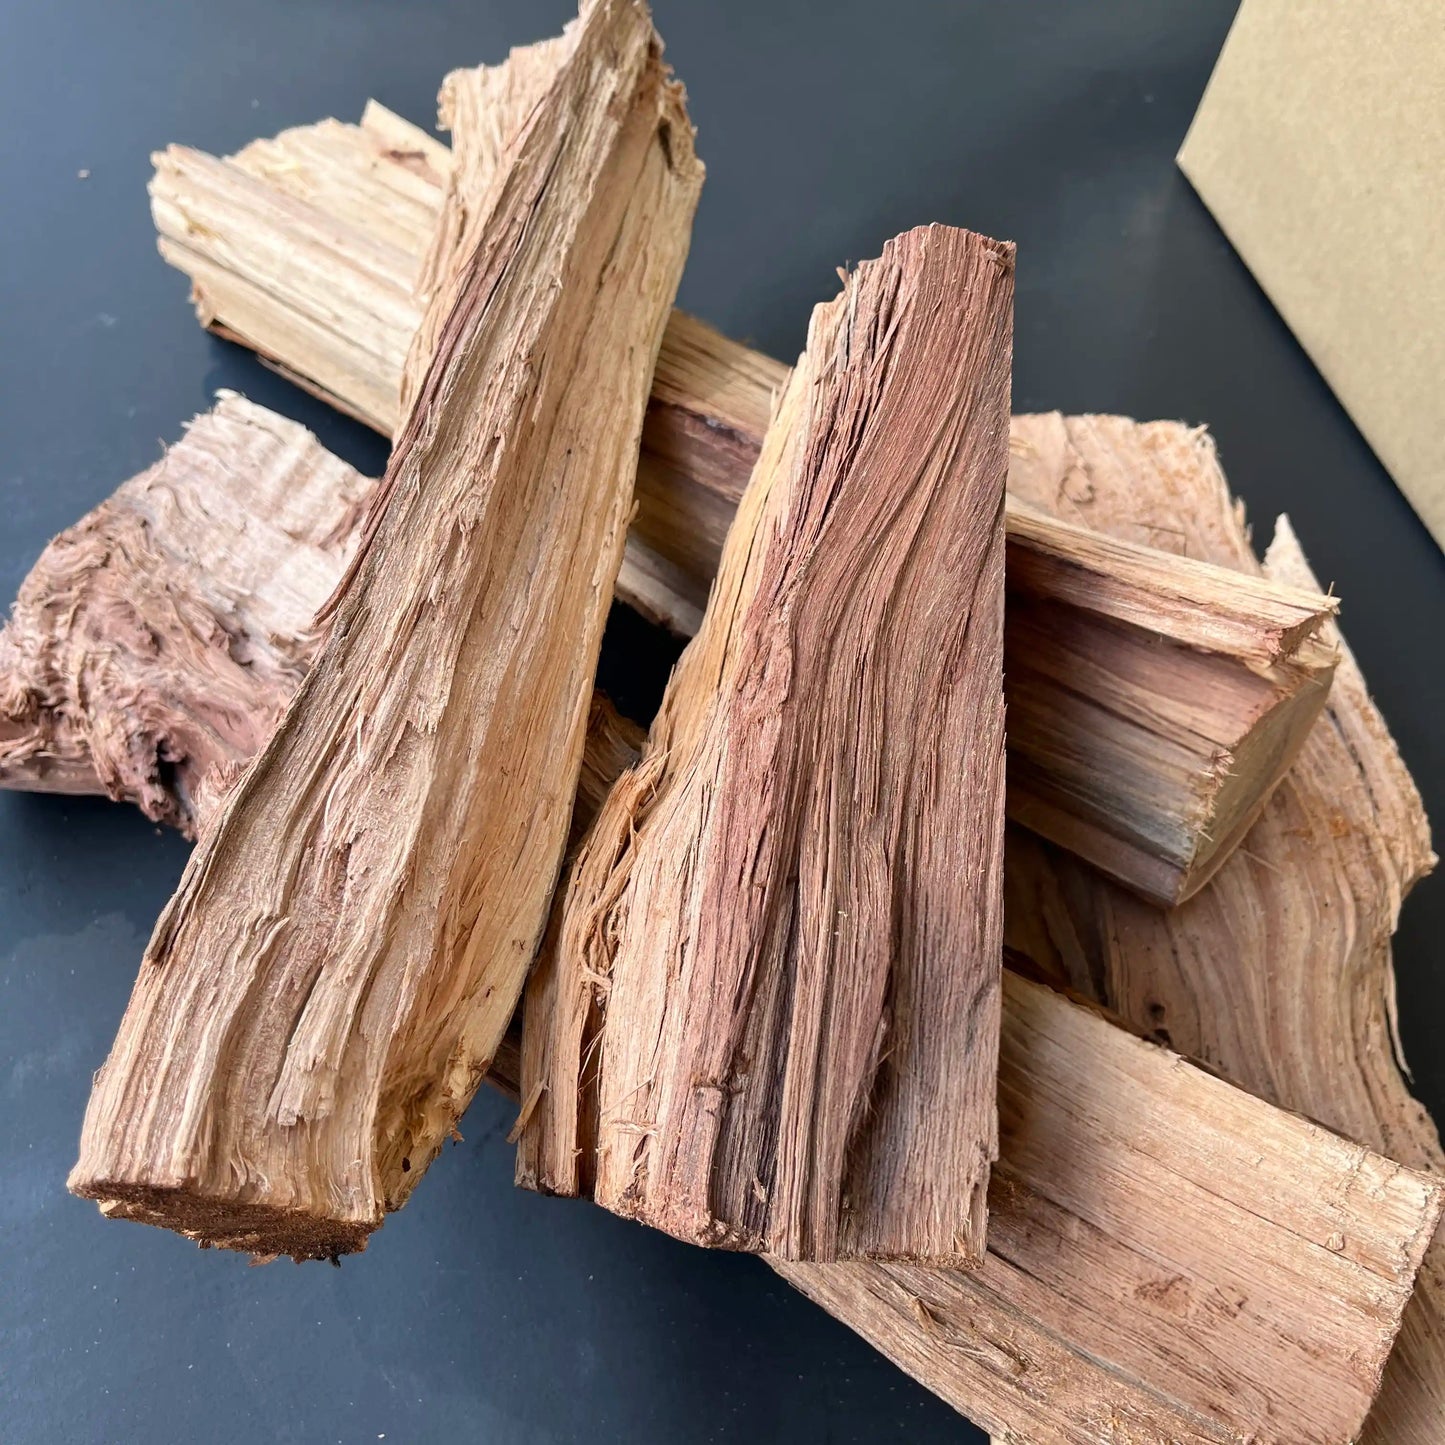 Ironwood Split Firewood - Large Box - FIREWOOD HAWAII